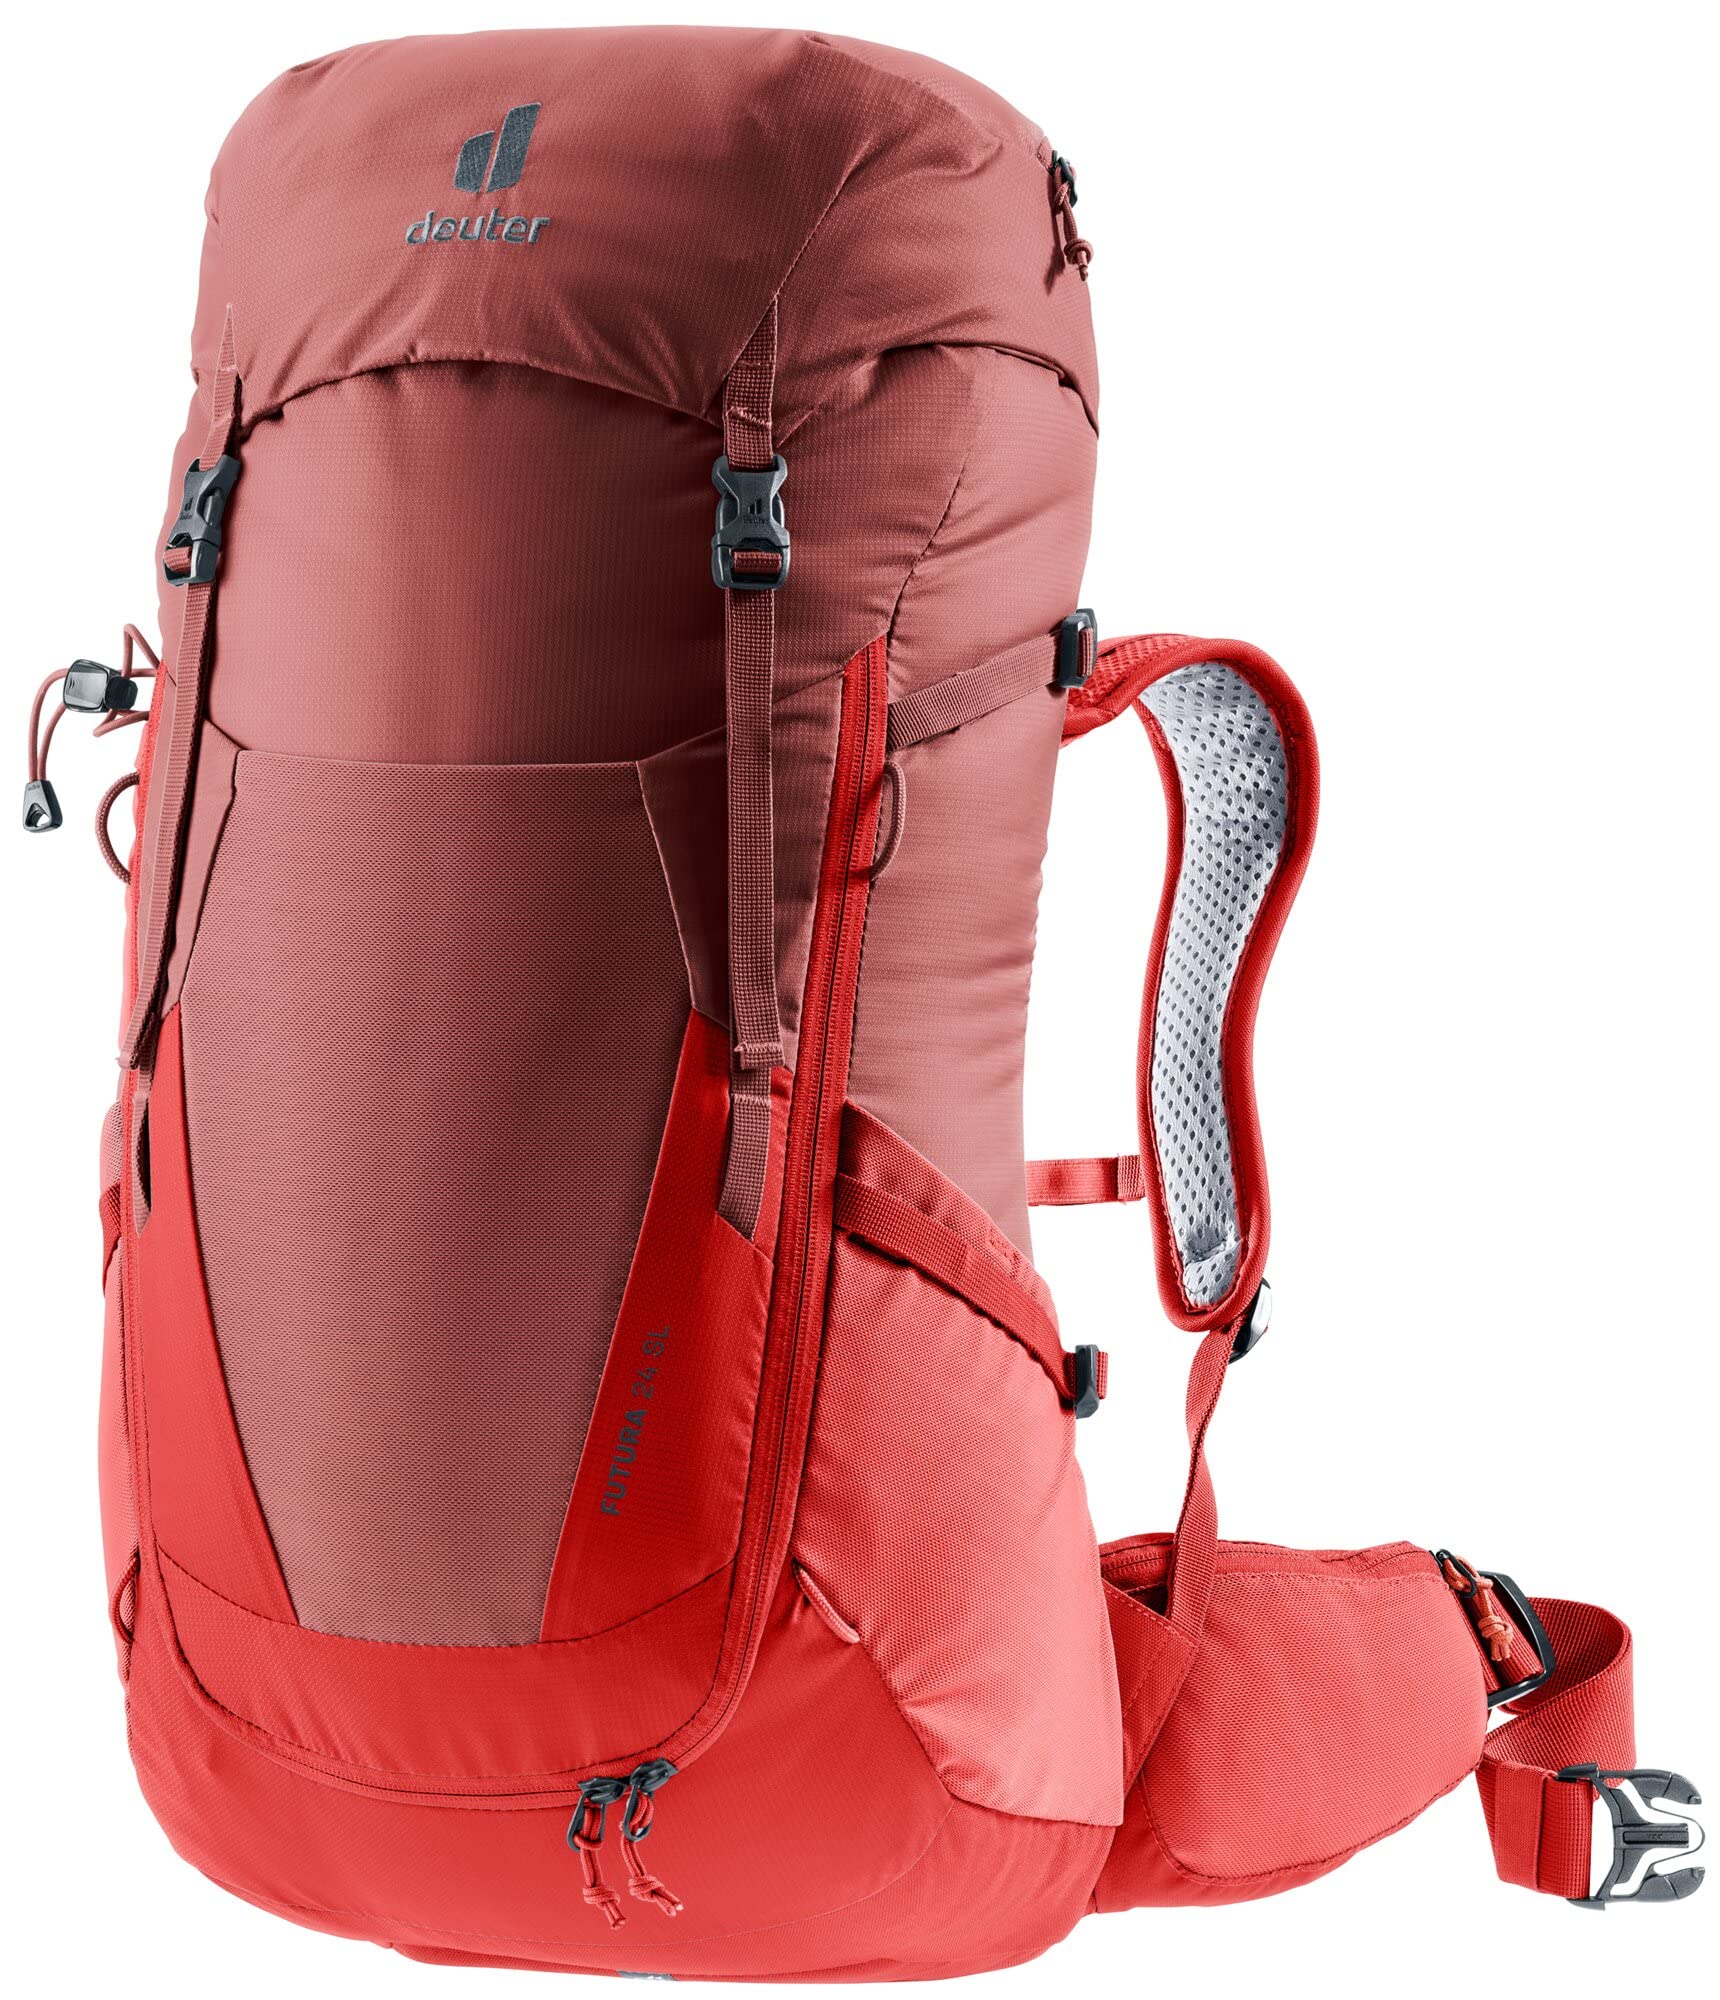 [ドイター] 登山用バックパック フューチュラ 24 SL カスピア×カラント D3400521-5589 2021年モデル レディース 24L